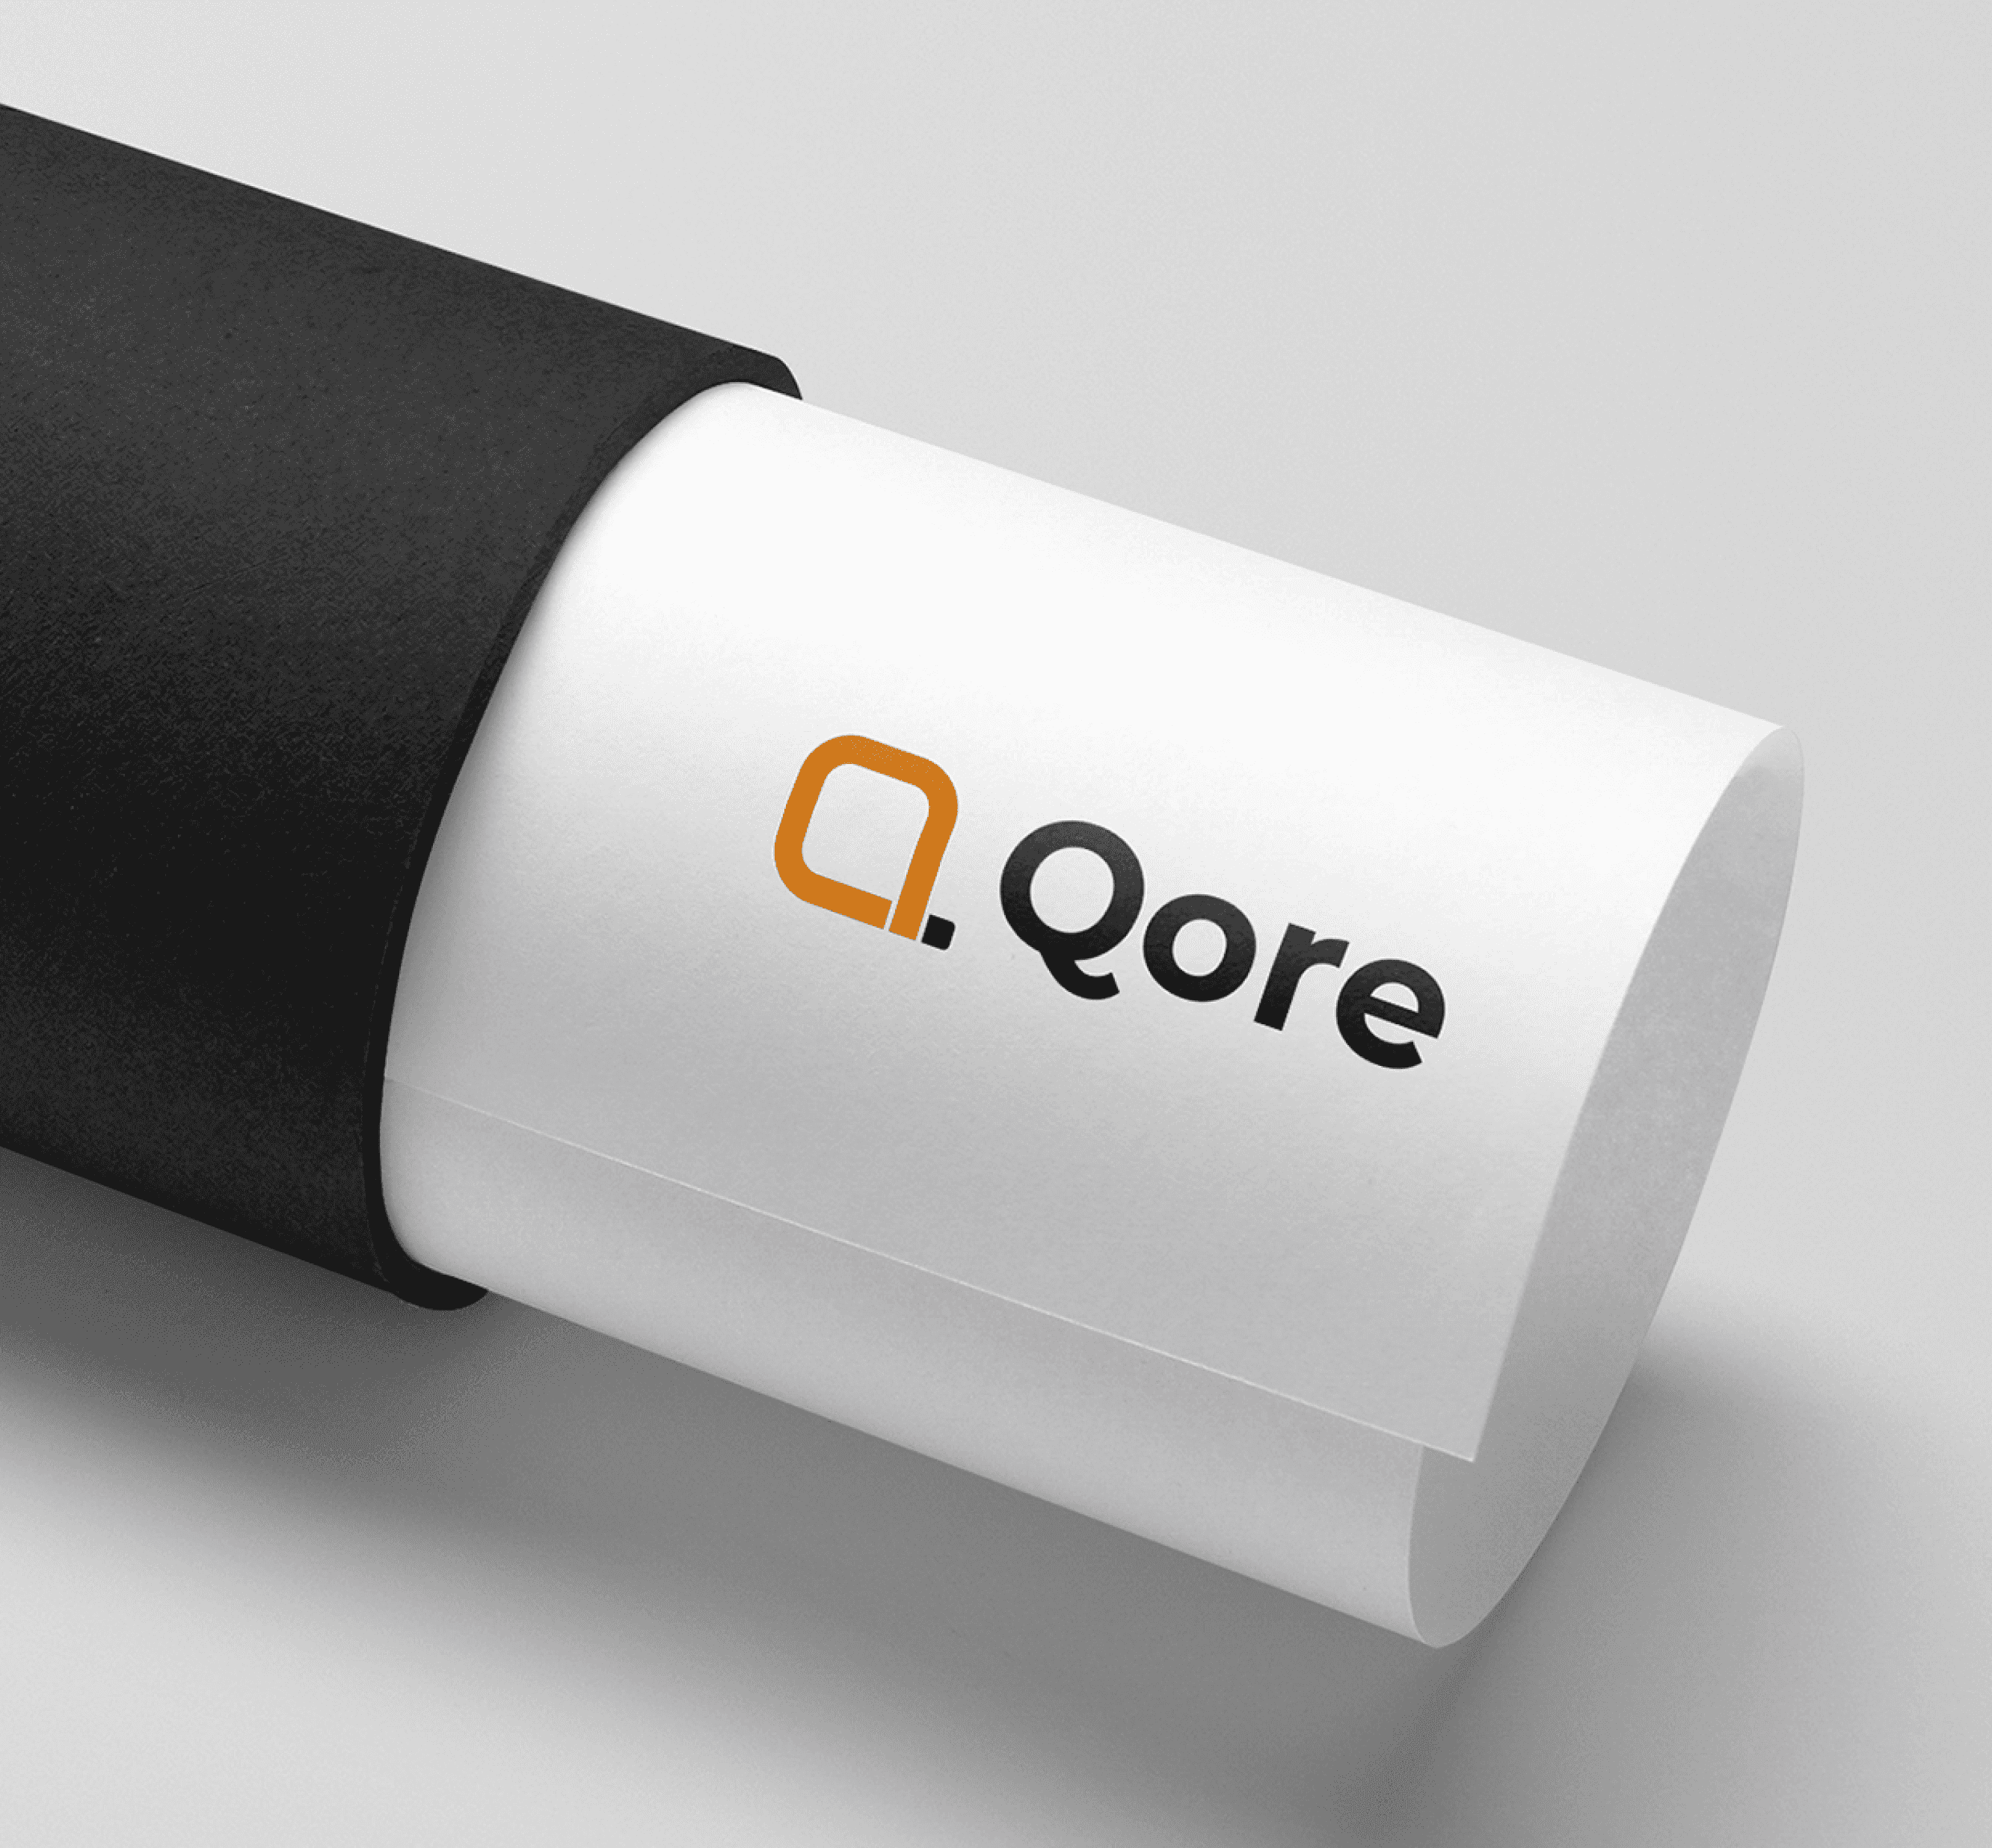 Qore Complete Brand Development